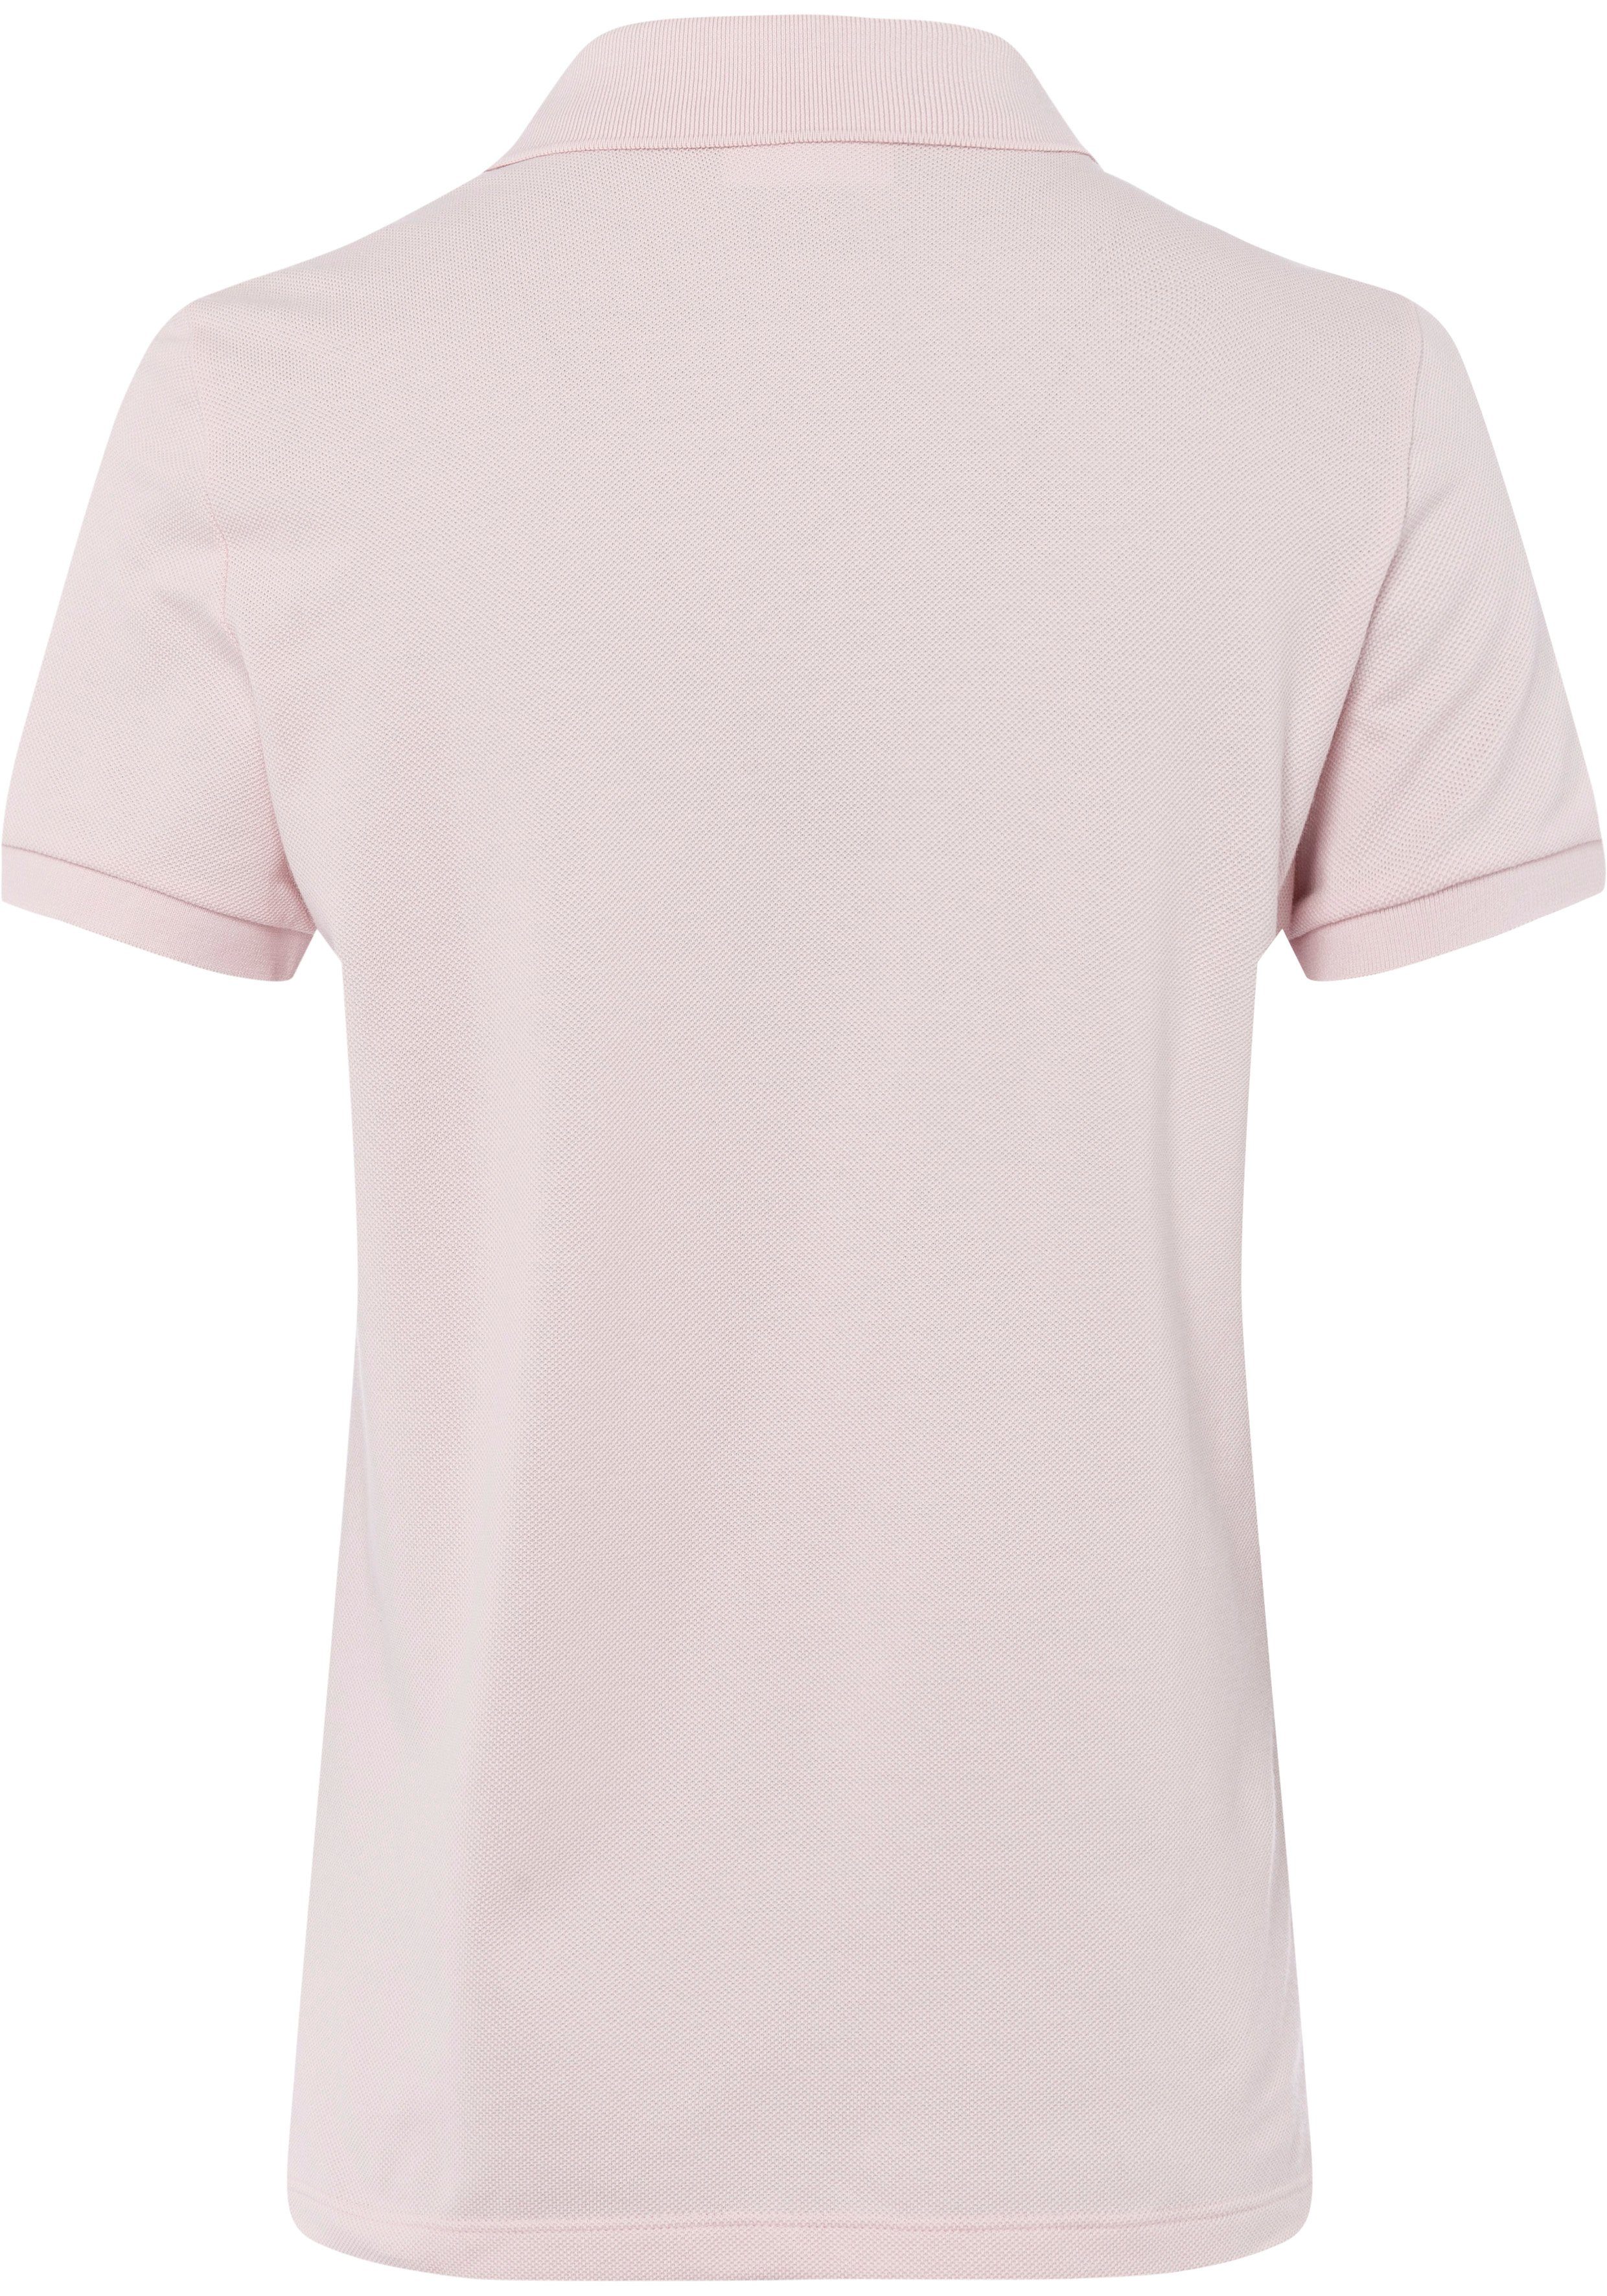 Poloshirt Brust Lacoste rosa auf Lacoste-Logo-Patch mit der